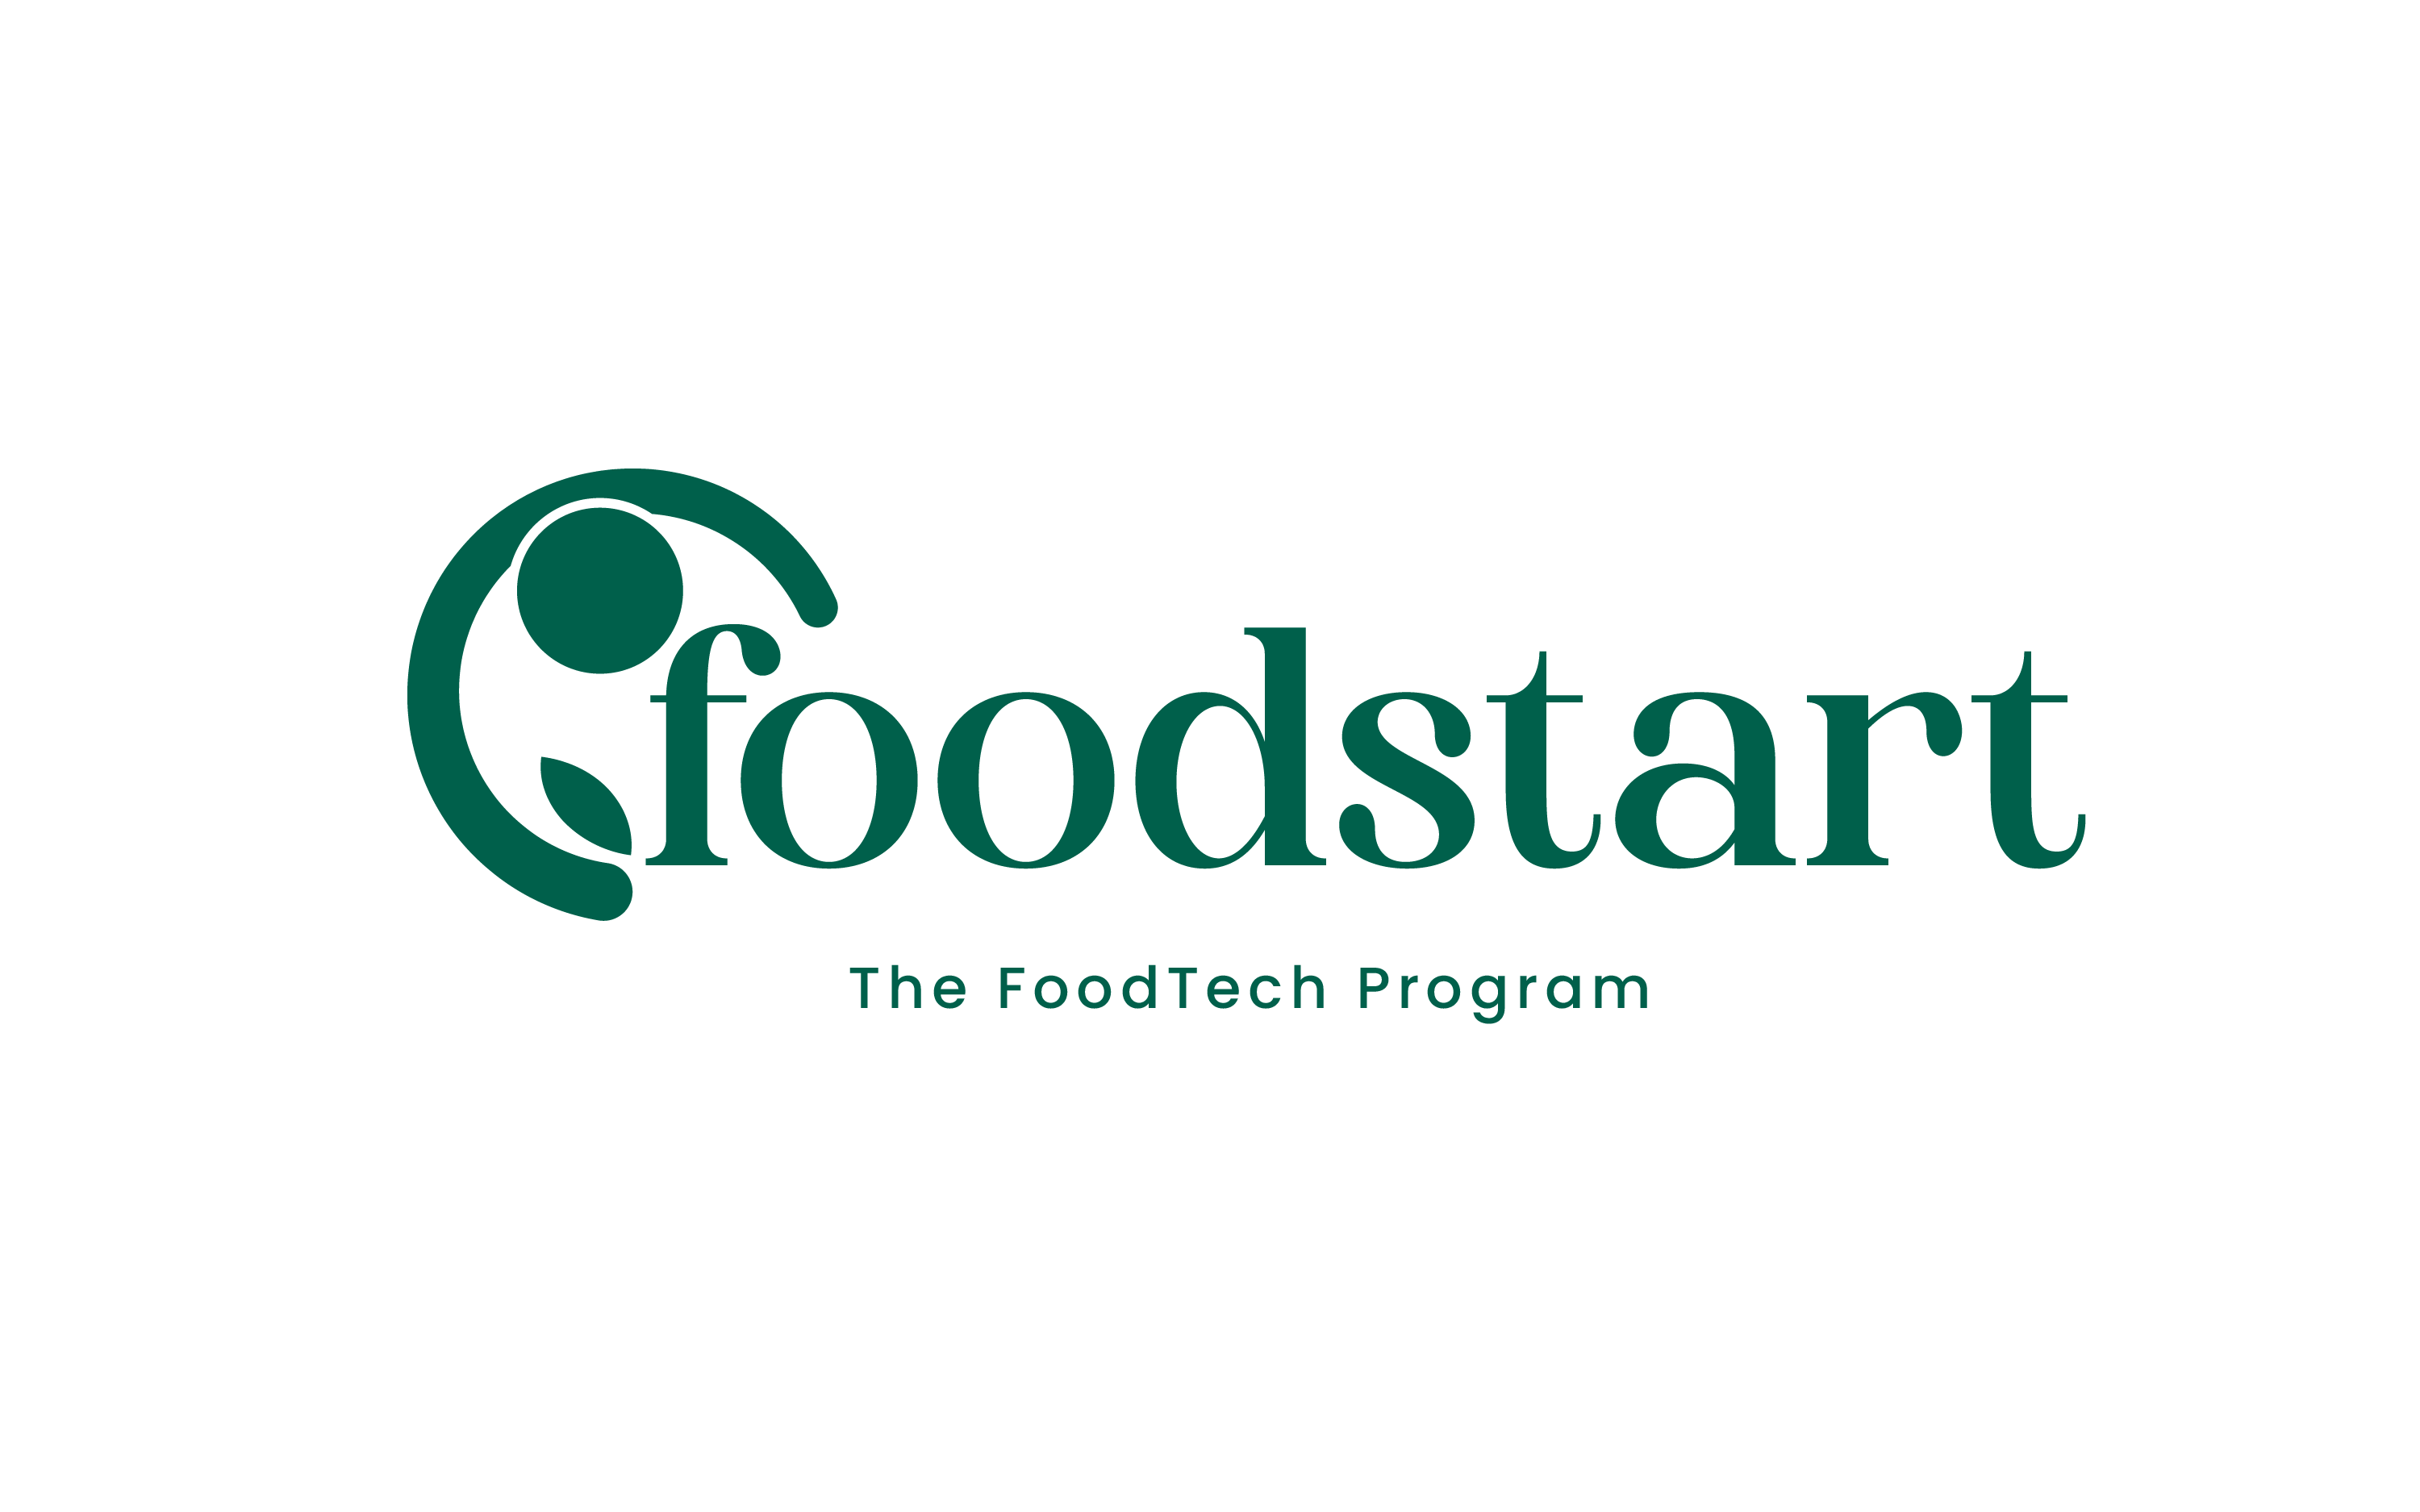 foodstart logo.png (68 KB)